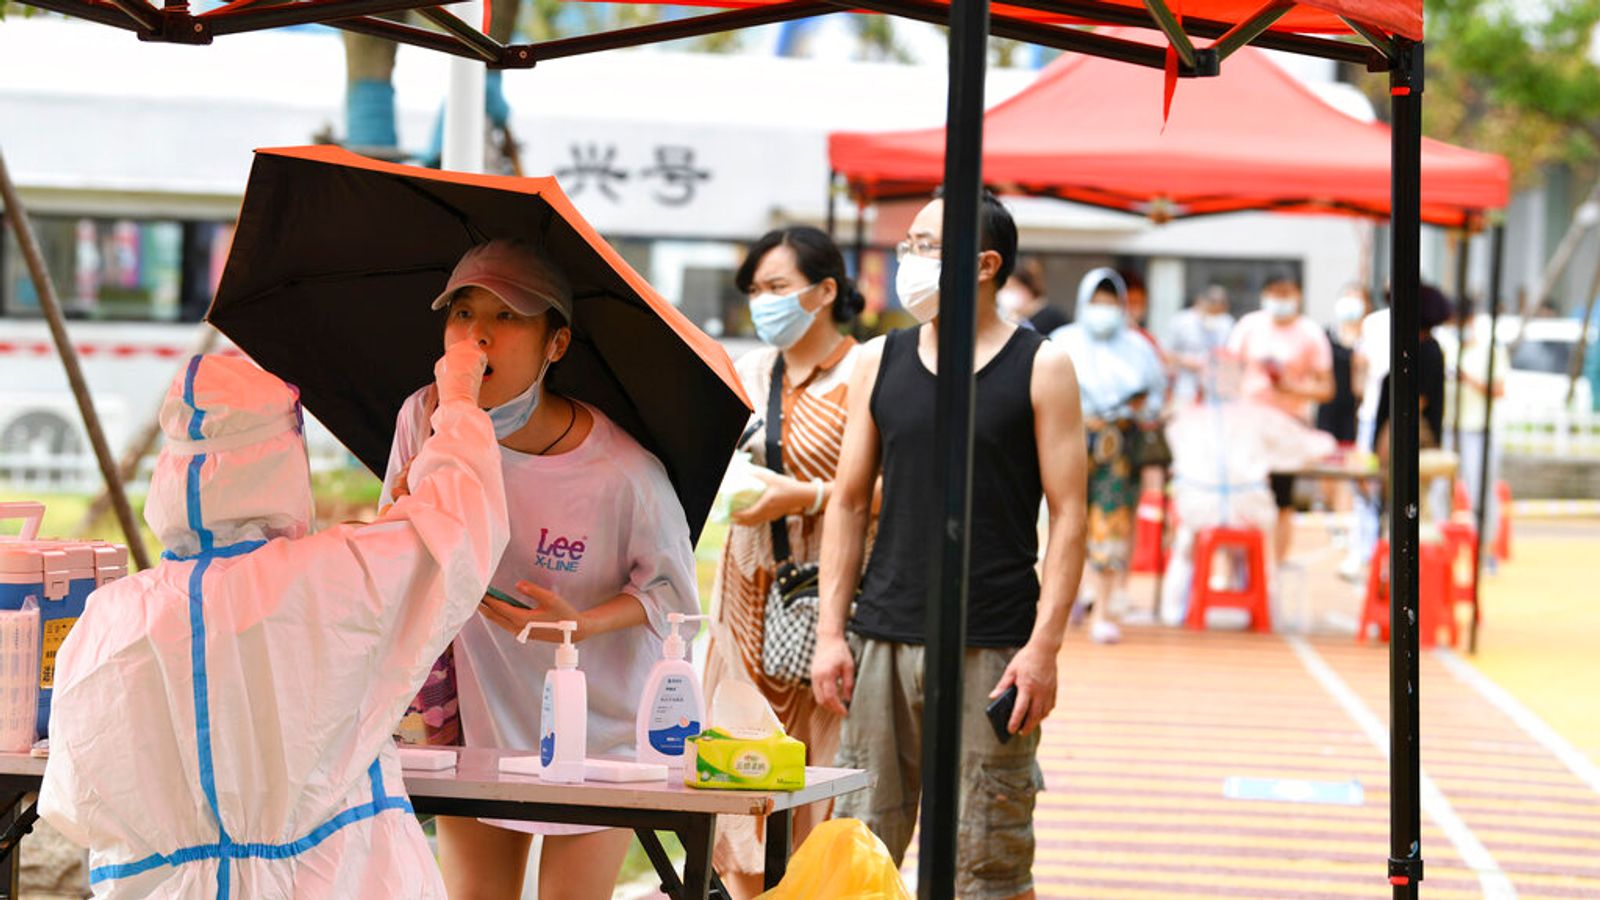 Réaction en Chine après que les autorités ont perquisitionné des maisons pour trouver des «contacts étroits» de personnes infectées par un coronavirus |  Nouvelles du monde